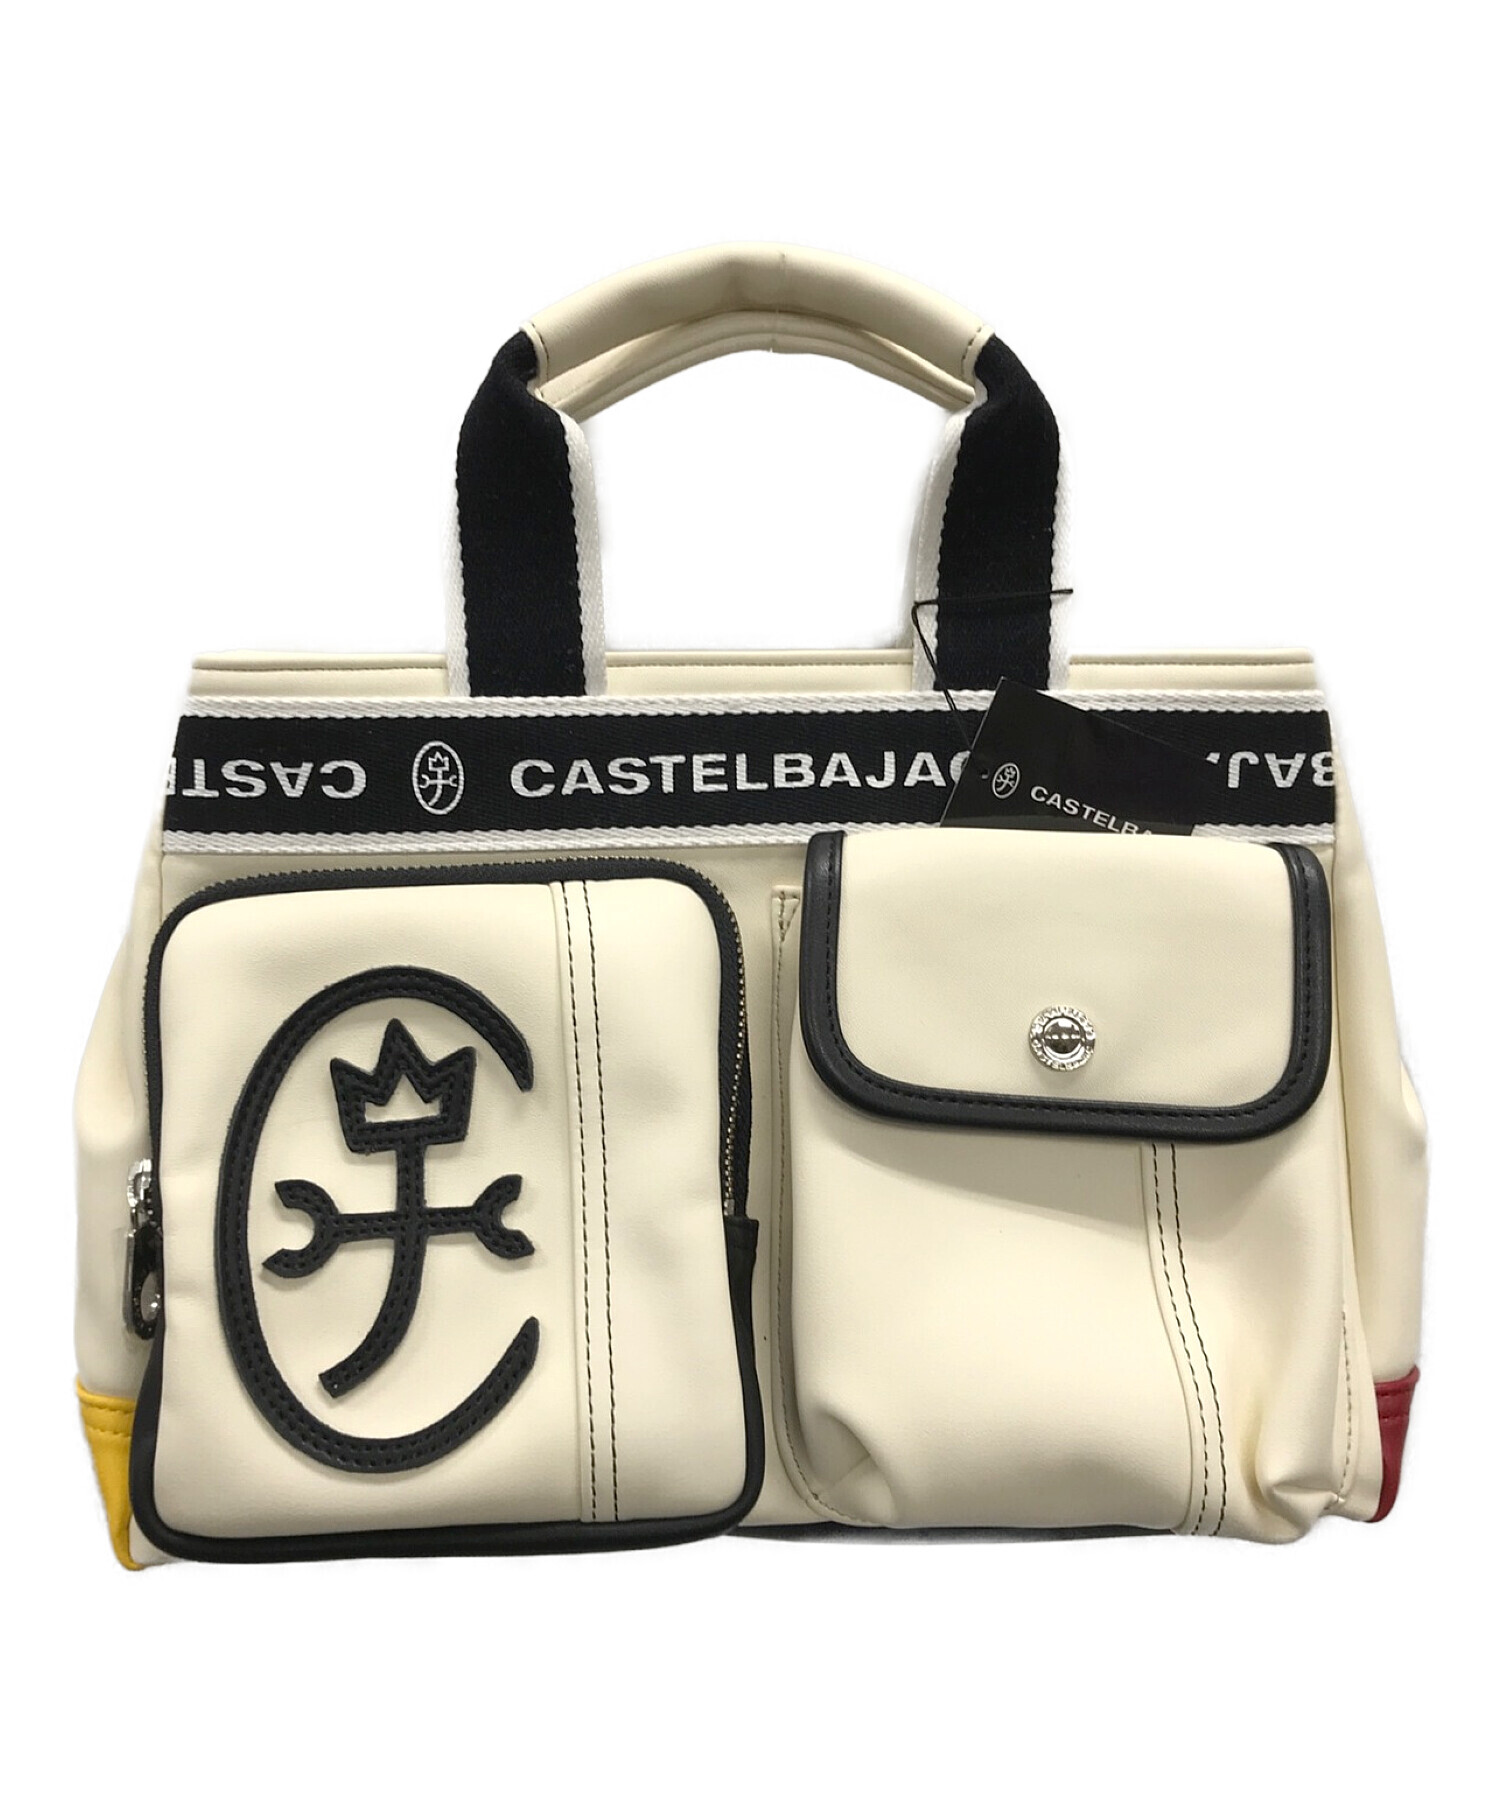 CASTELBAJAC (カステルバジャック) ハンドバッグ オフホワイト サイズ:実寸サイズにてご確認ください。